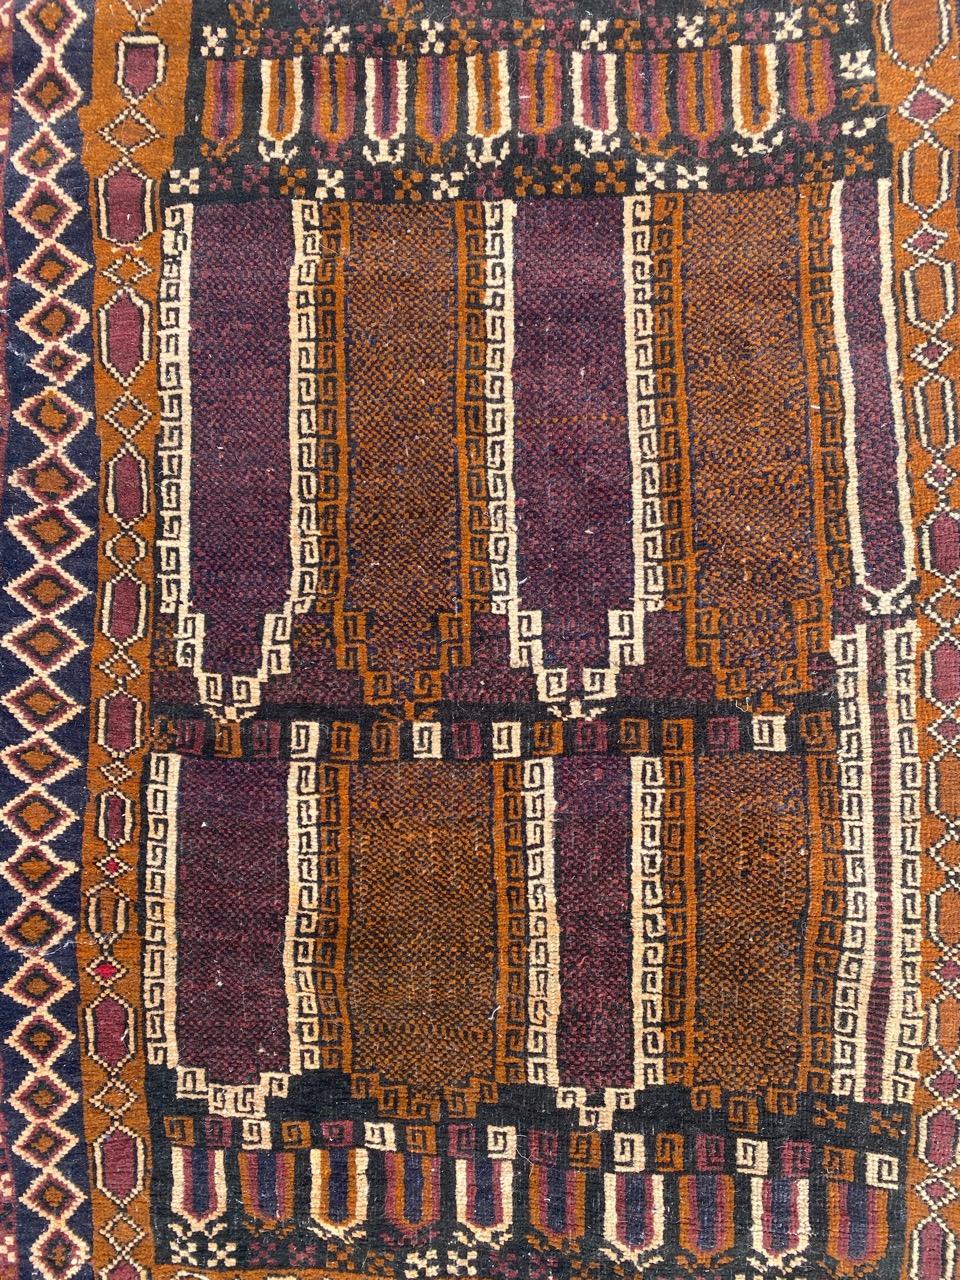 Joli tapis afghan tribal Baluch avec un design géométrique et de belles couleurs, entièrement noué à la main avec du velours de laine sur une base de laine.